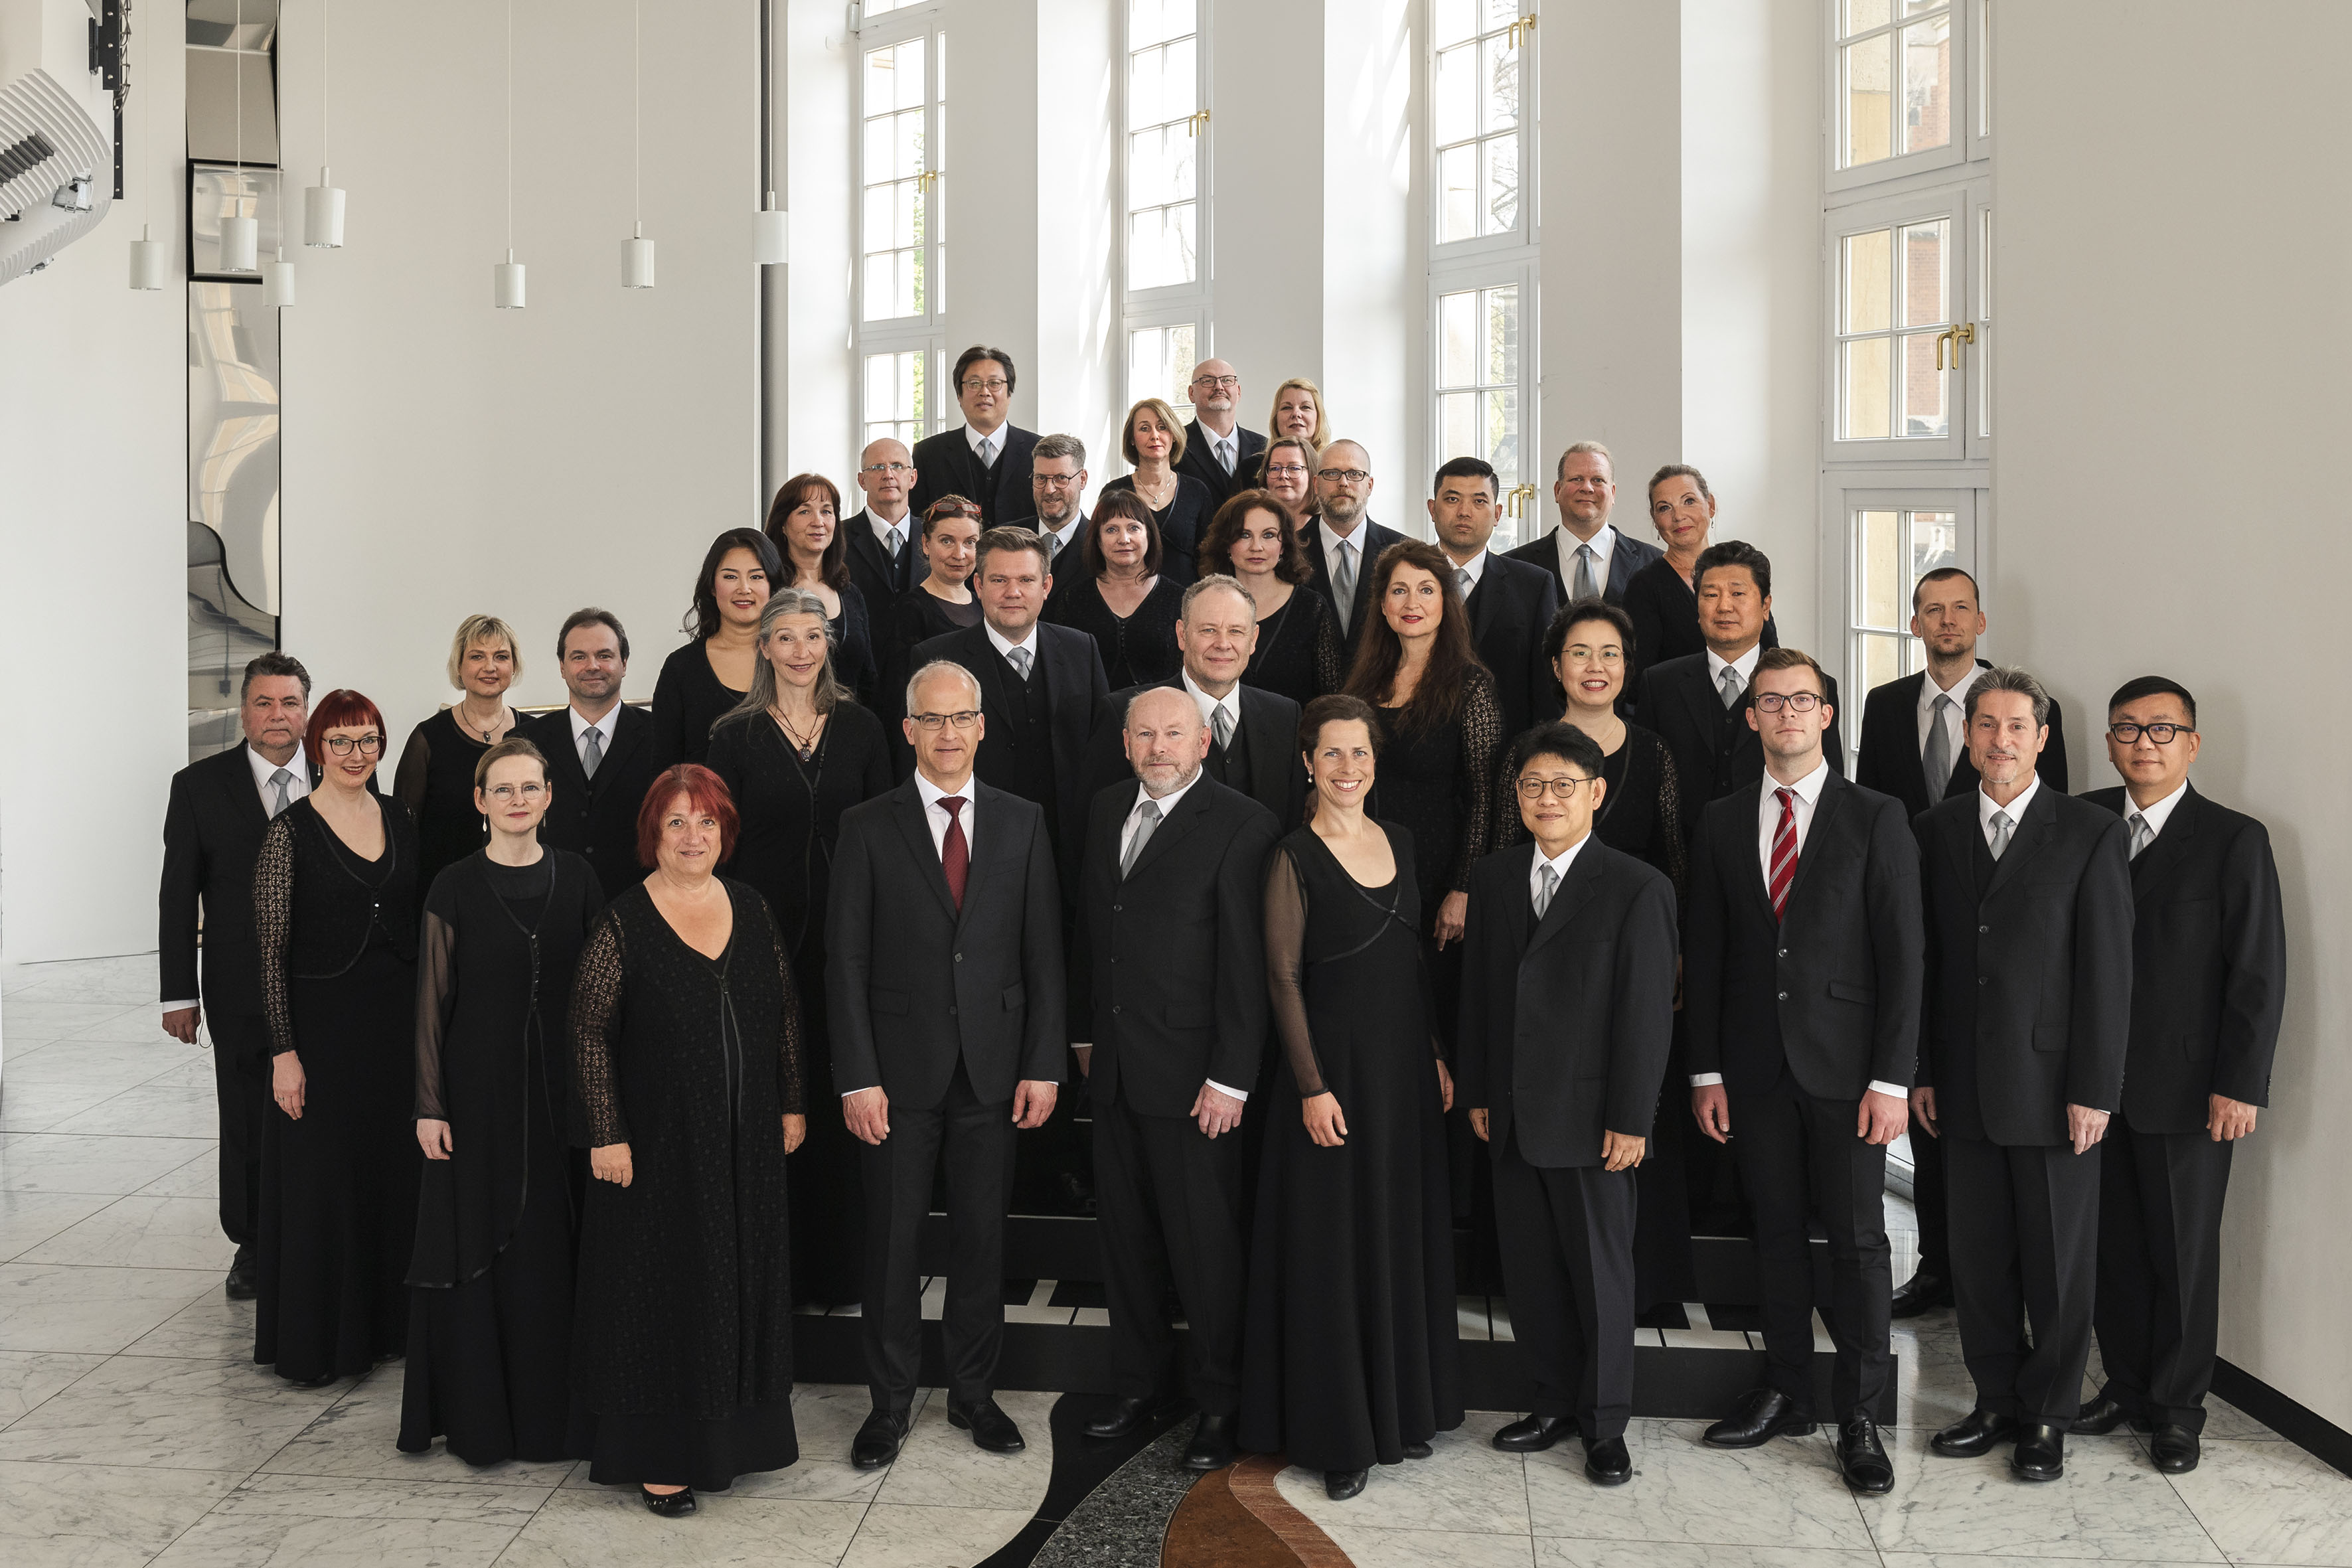 Foto der Mitglieder des Chemnitzer Opernchores, alle Chormitglieder sind schwarz gekleidet und stehen im Rangfoyer des Opernhauses